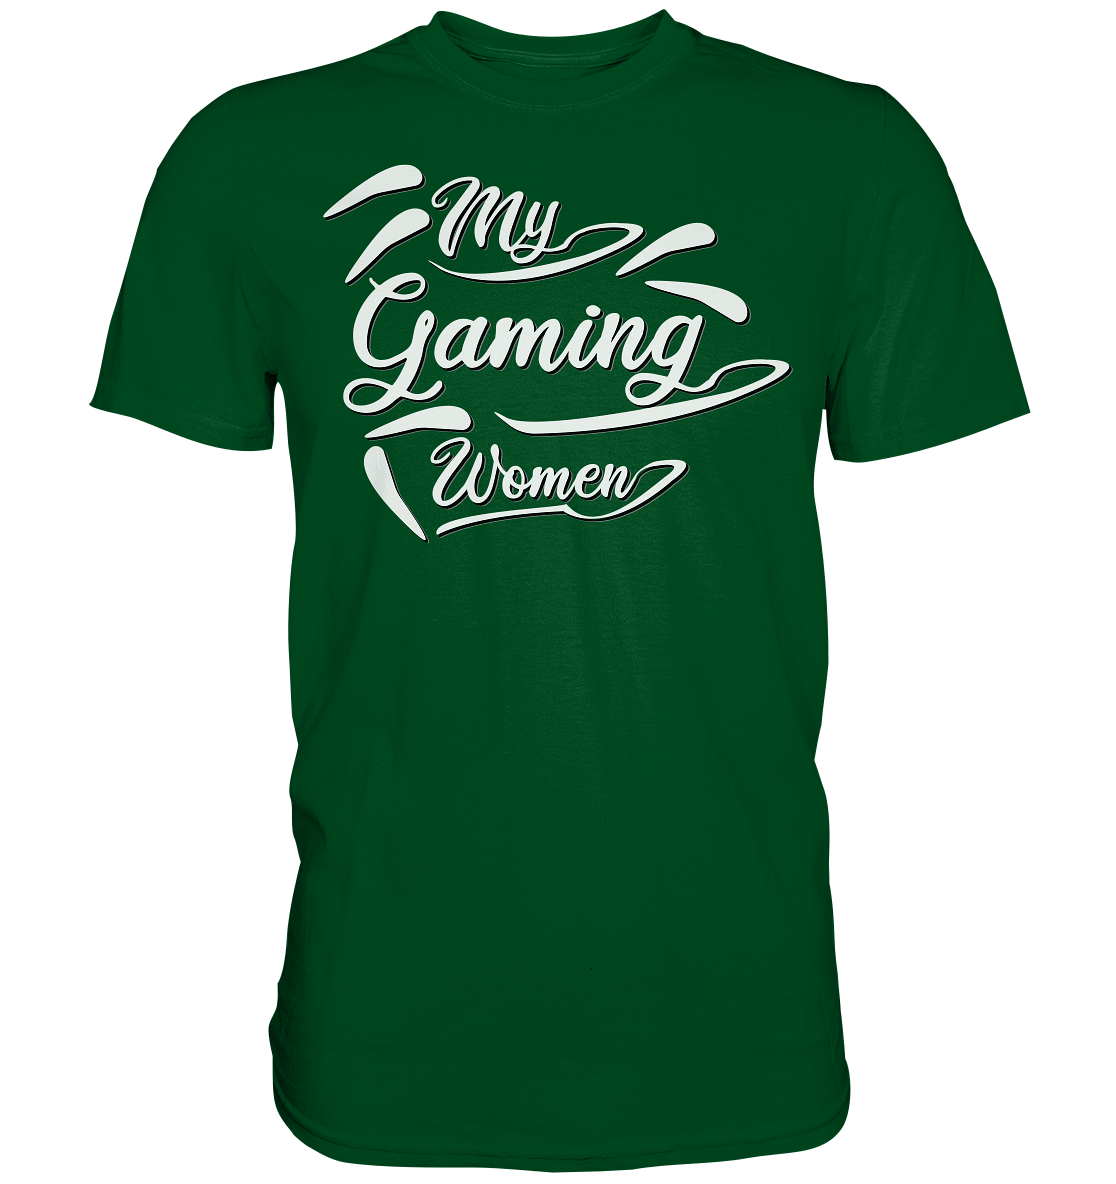 My Gaming Women - Premium Shirt